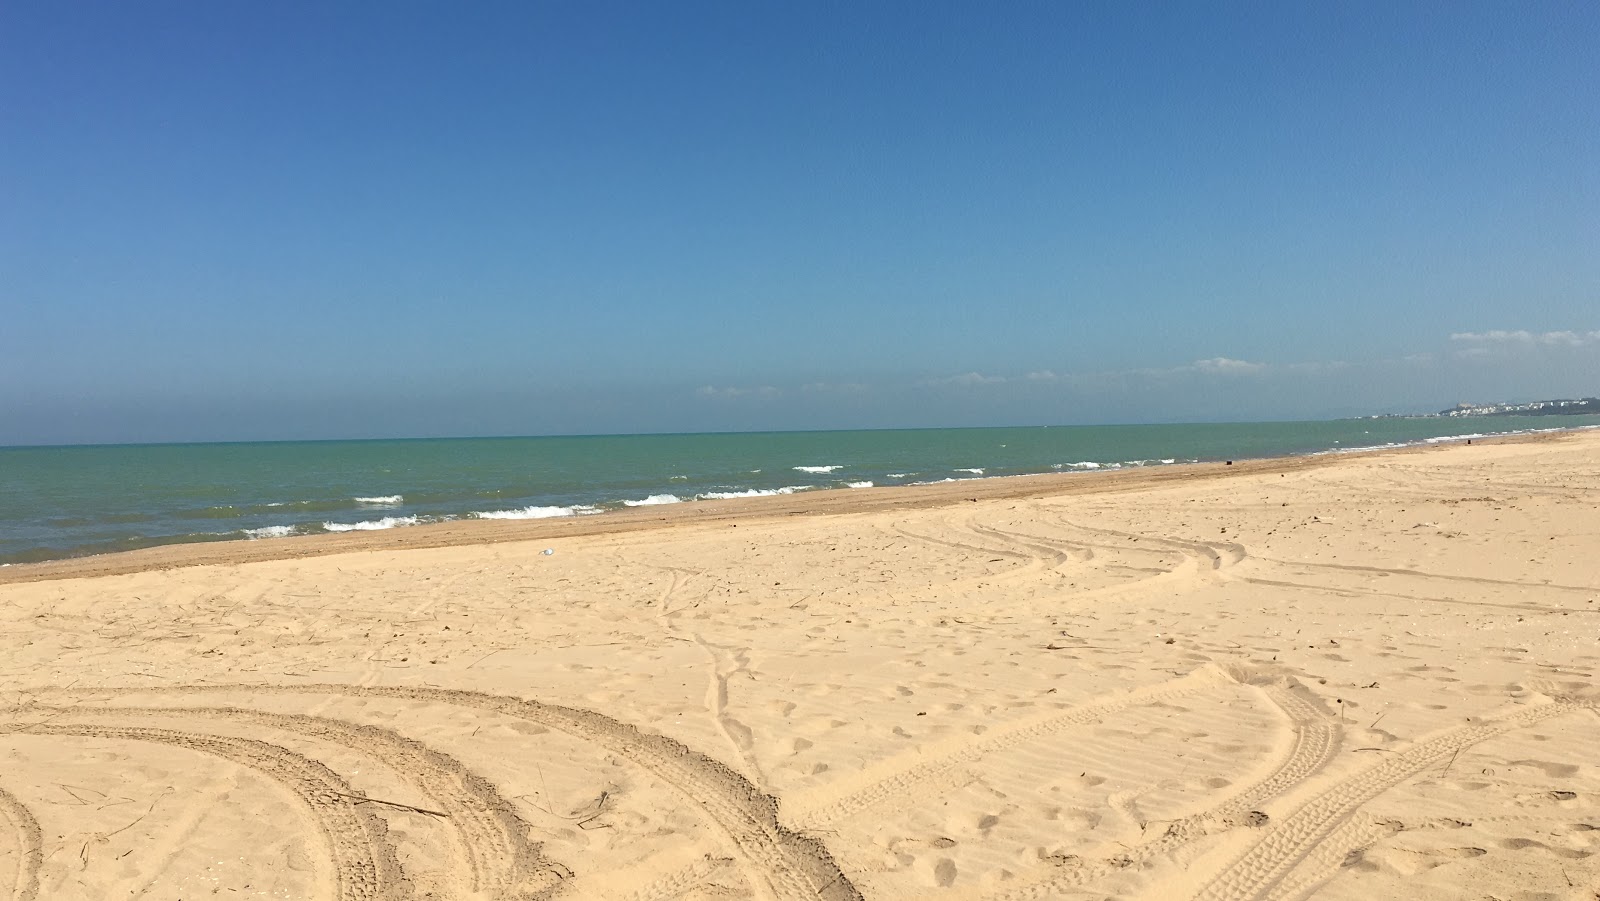 Zdjęcie Raoued plage z powierzchnią jasny, drobny piasek